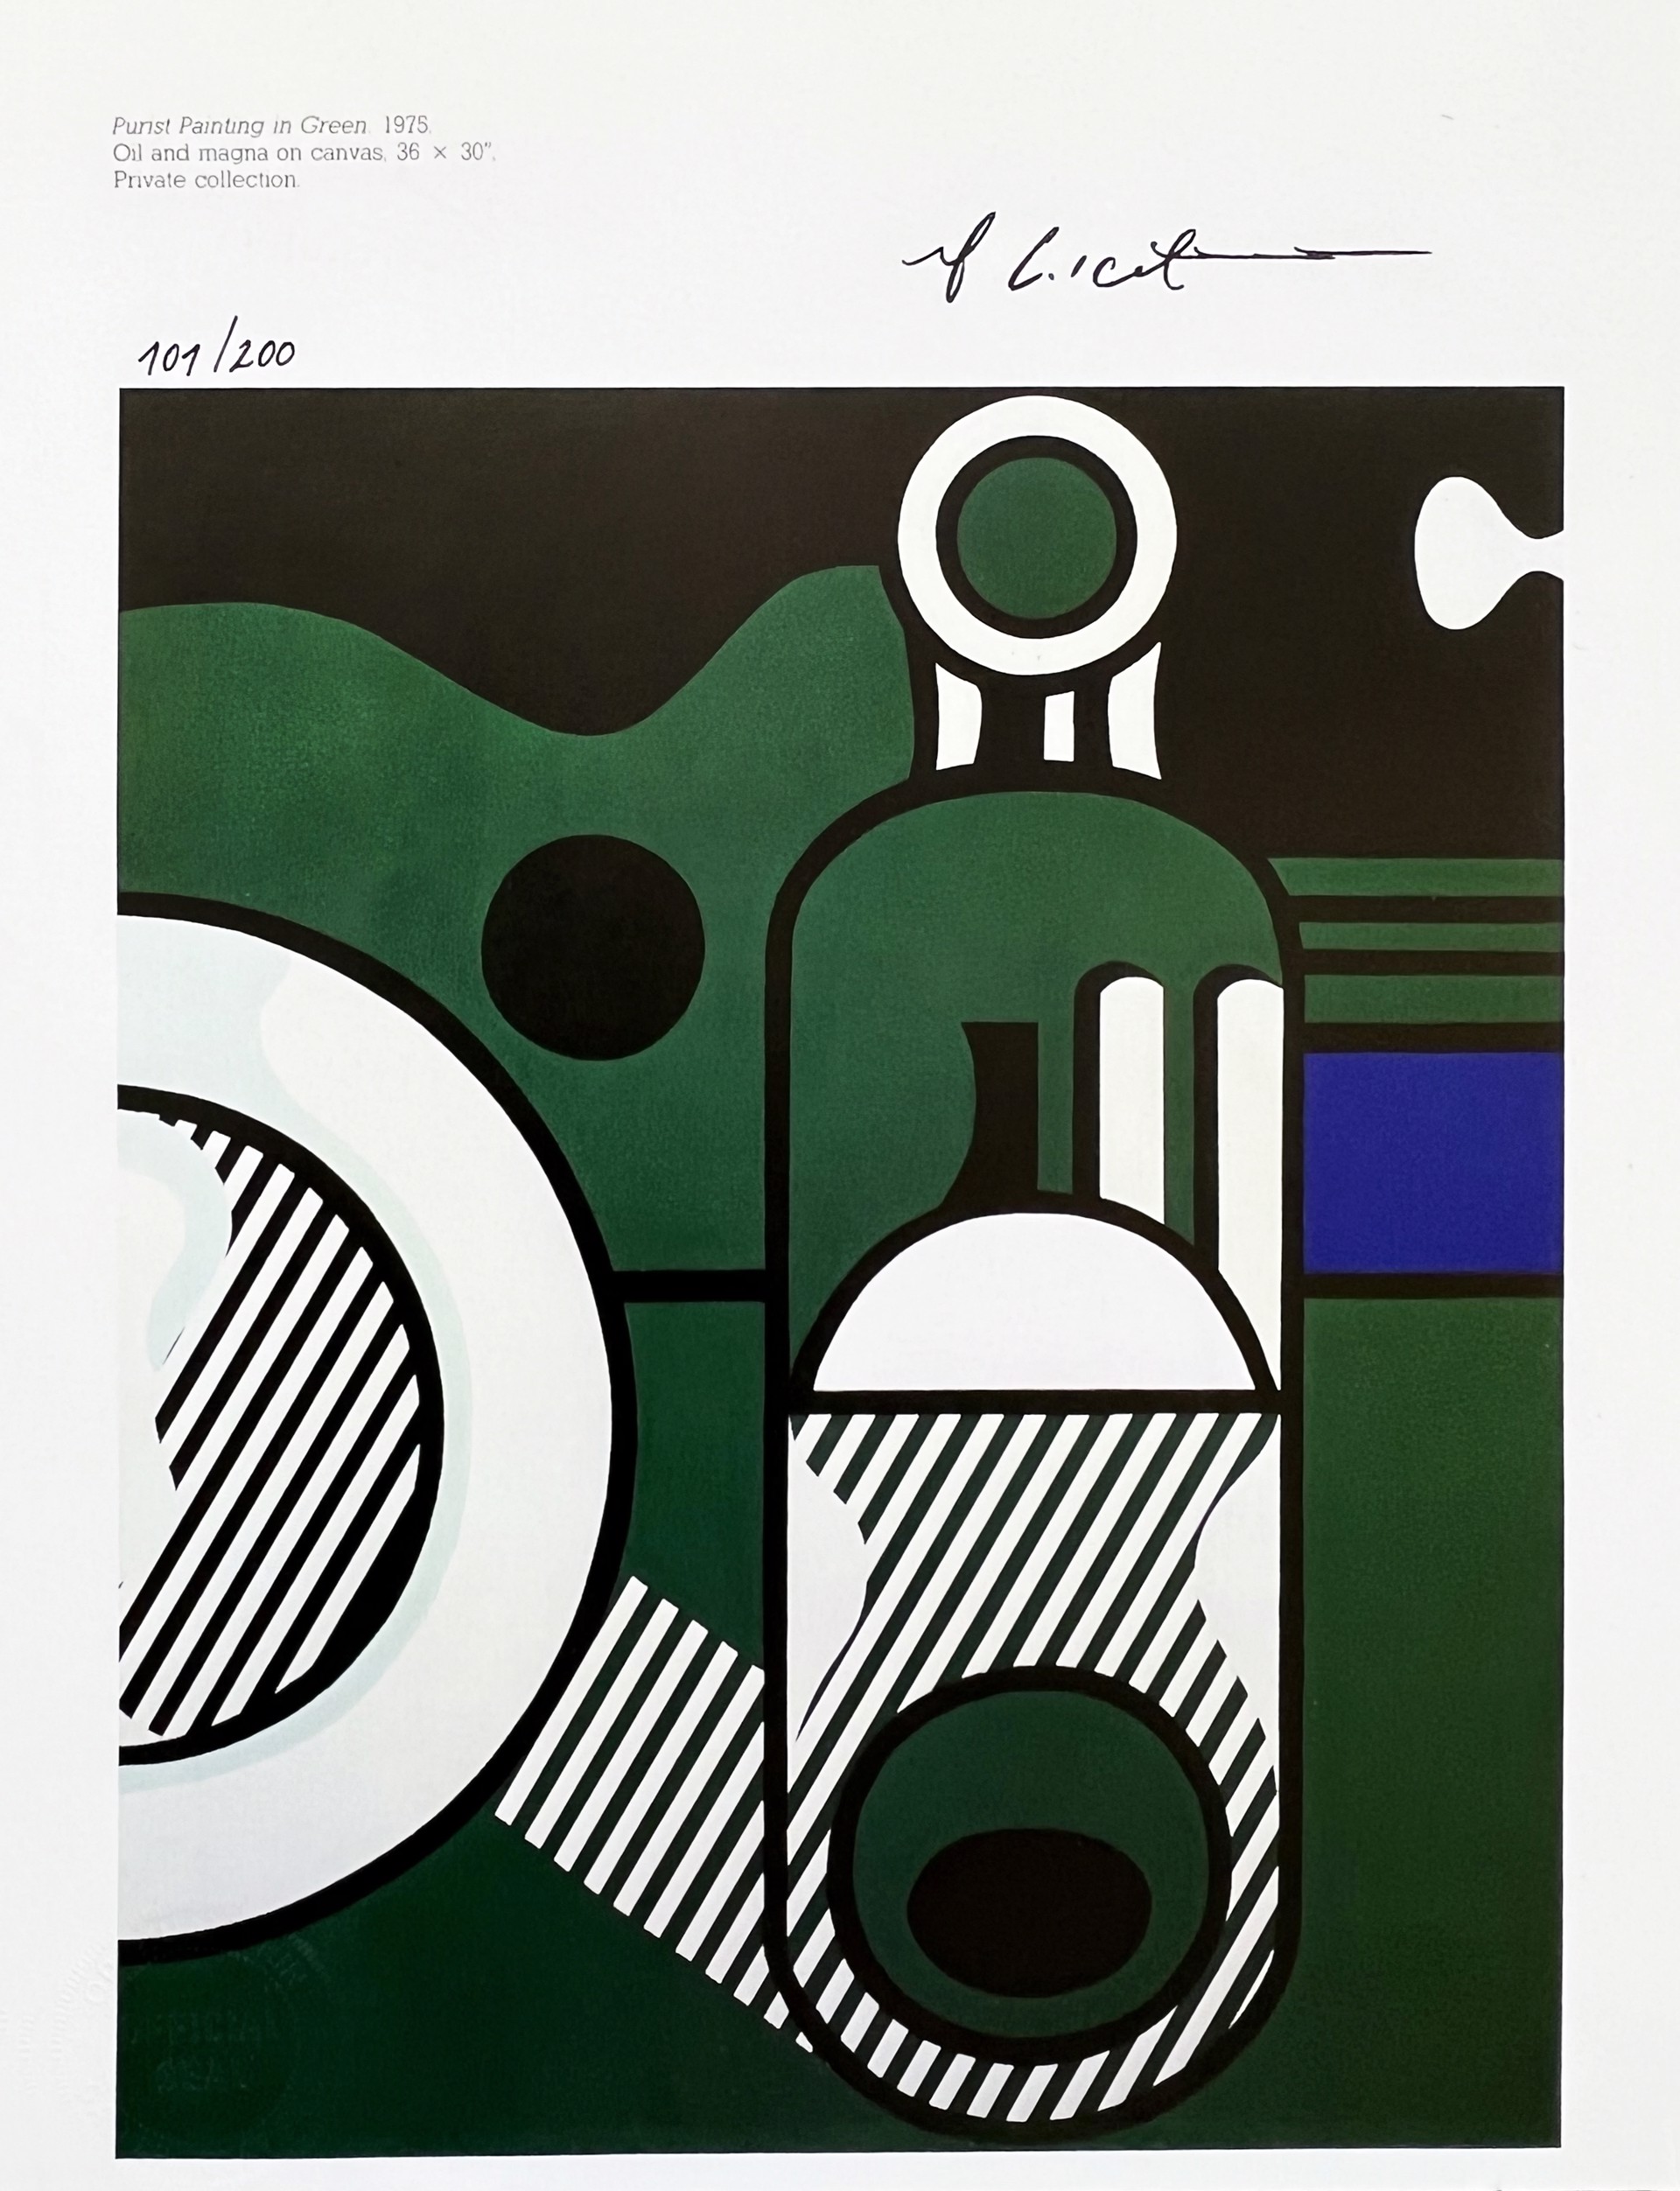 Purist Painting in Green - Roy Lichtenstein by European